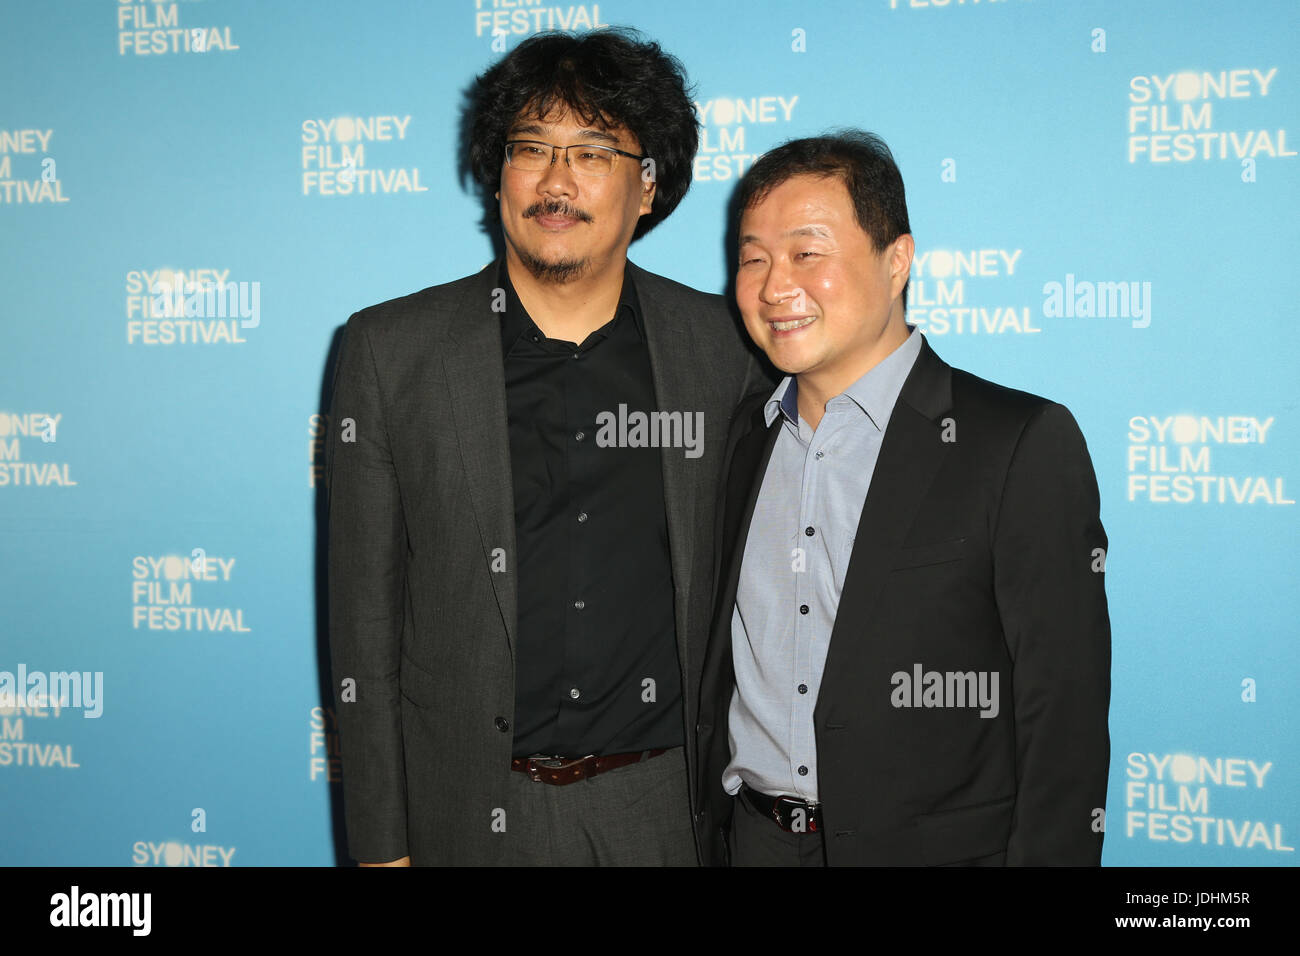 L-R : Bong Joon-Ho Film sud-coréen (directeur) et Kim Kini (membre du jury) arrive sur le tapis rouge pour la première de Okja australienne à la clôture Banque D'Images